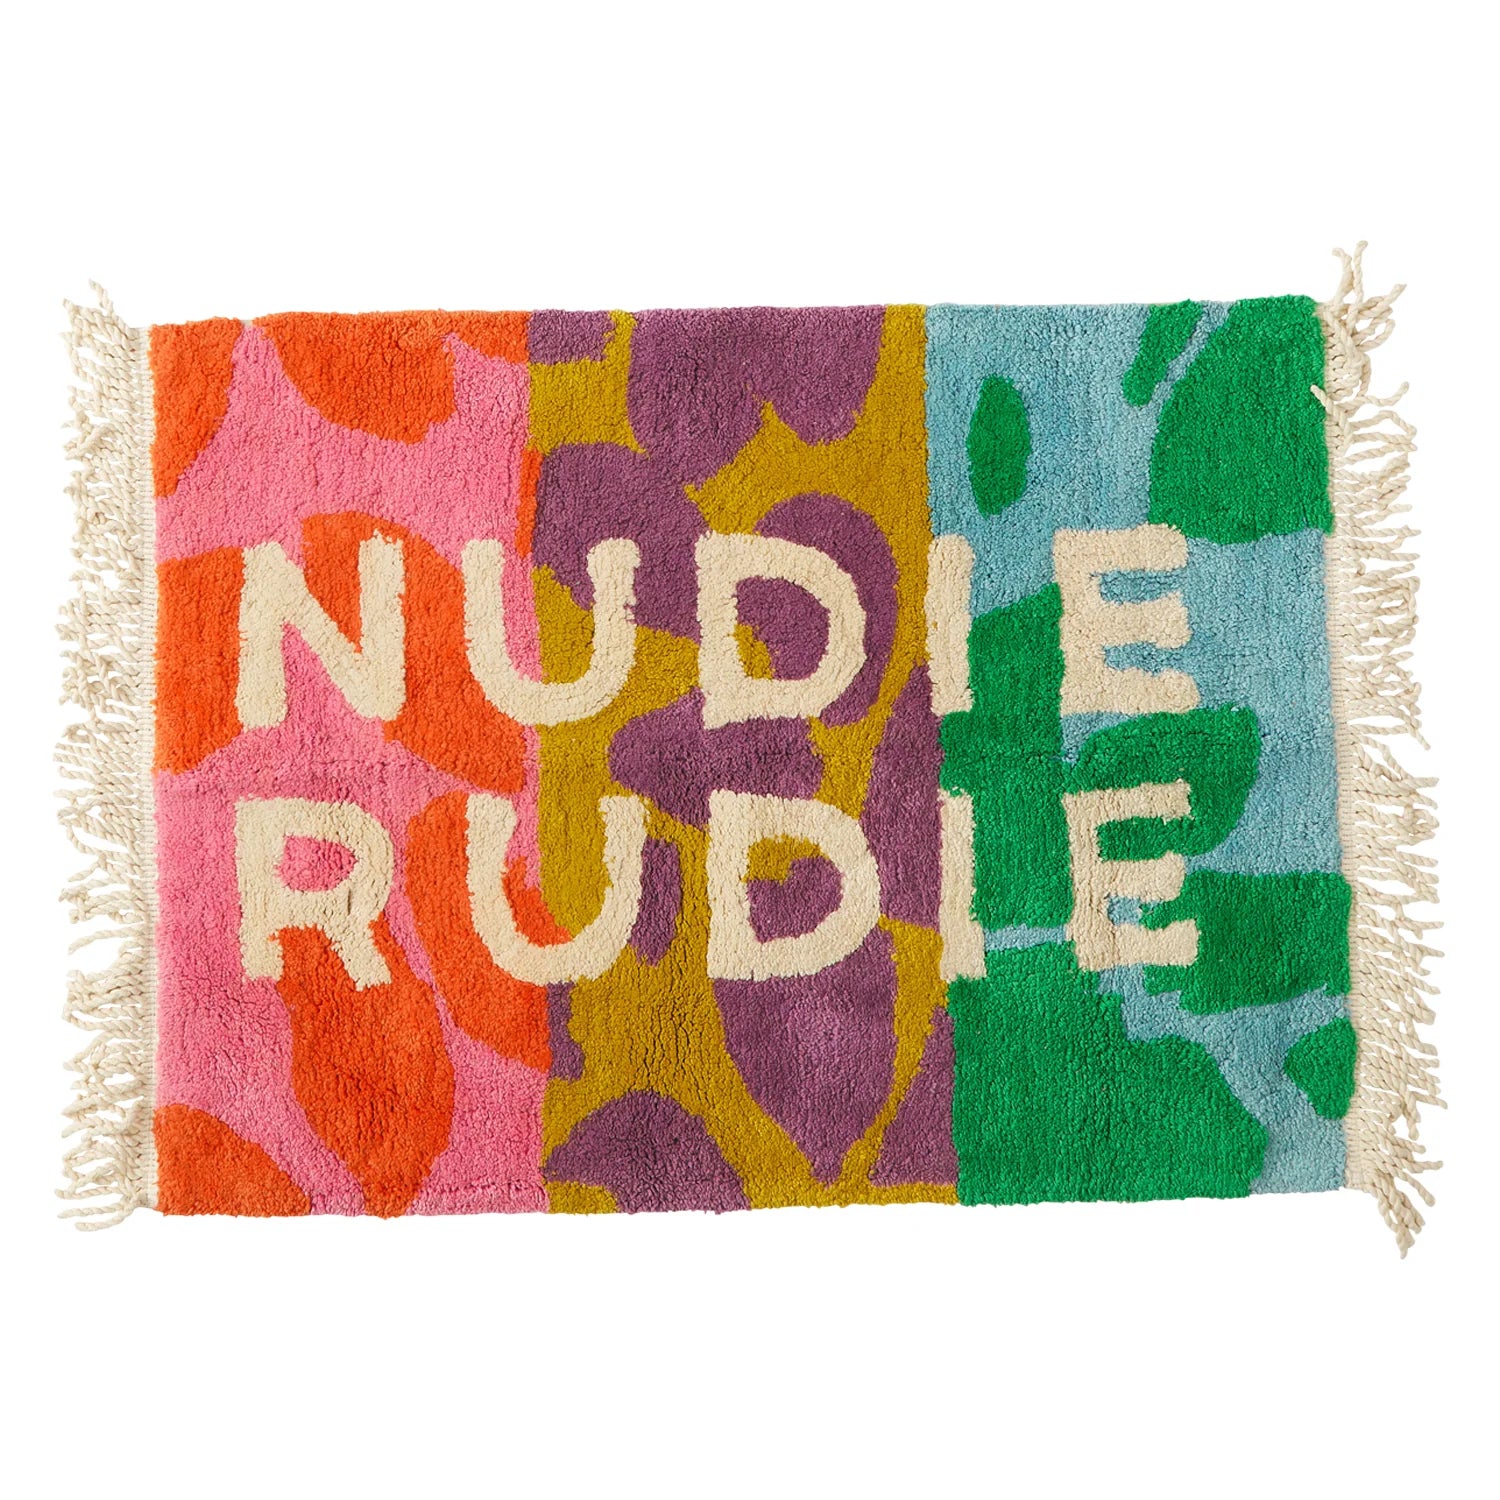 Hermosa Nudie Rudie Bath Mat